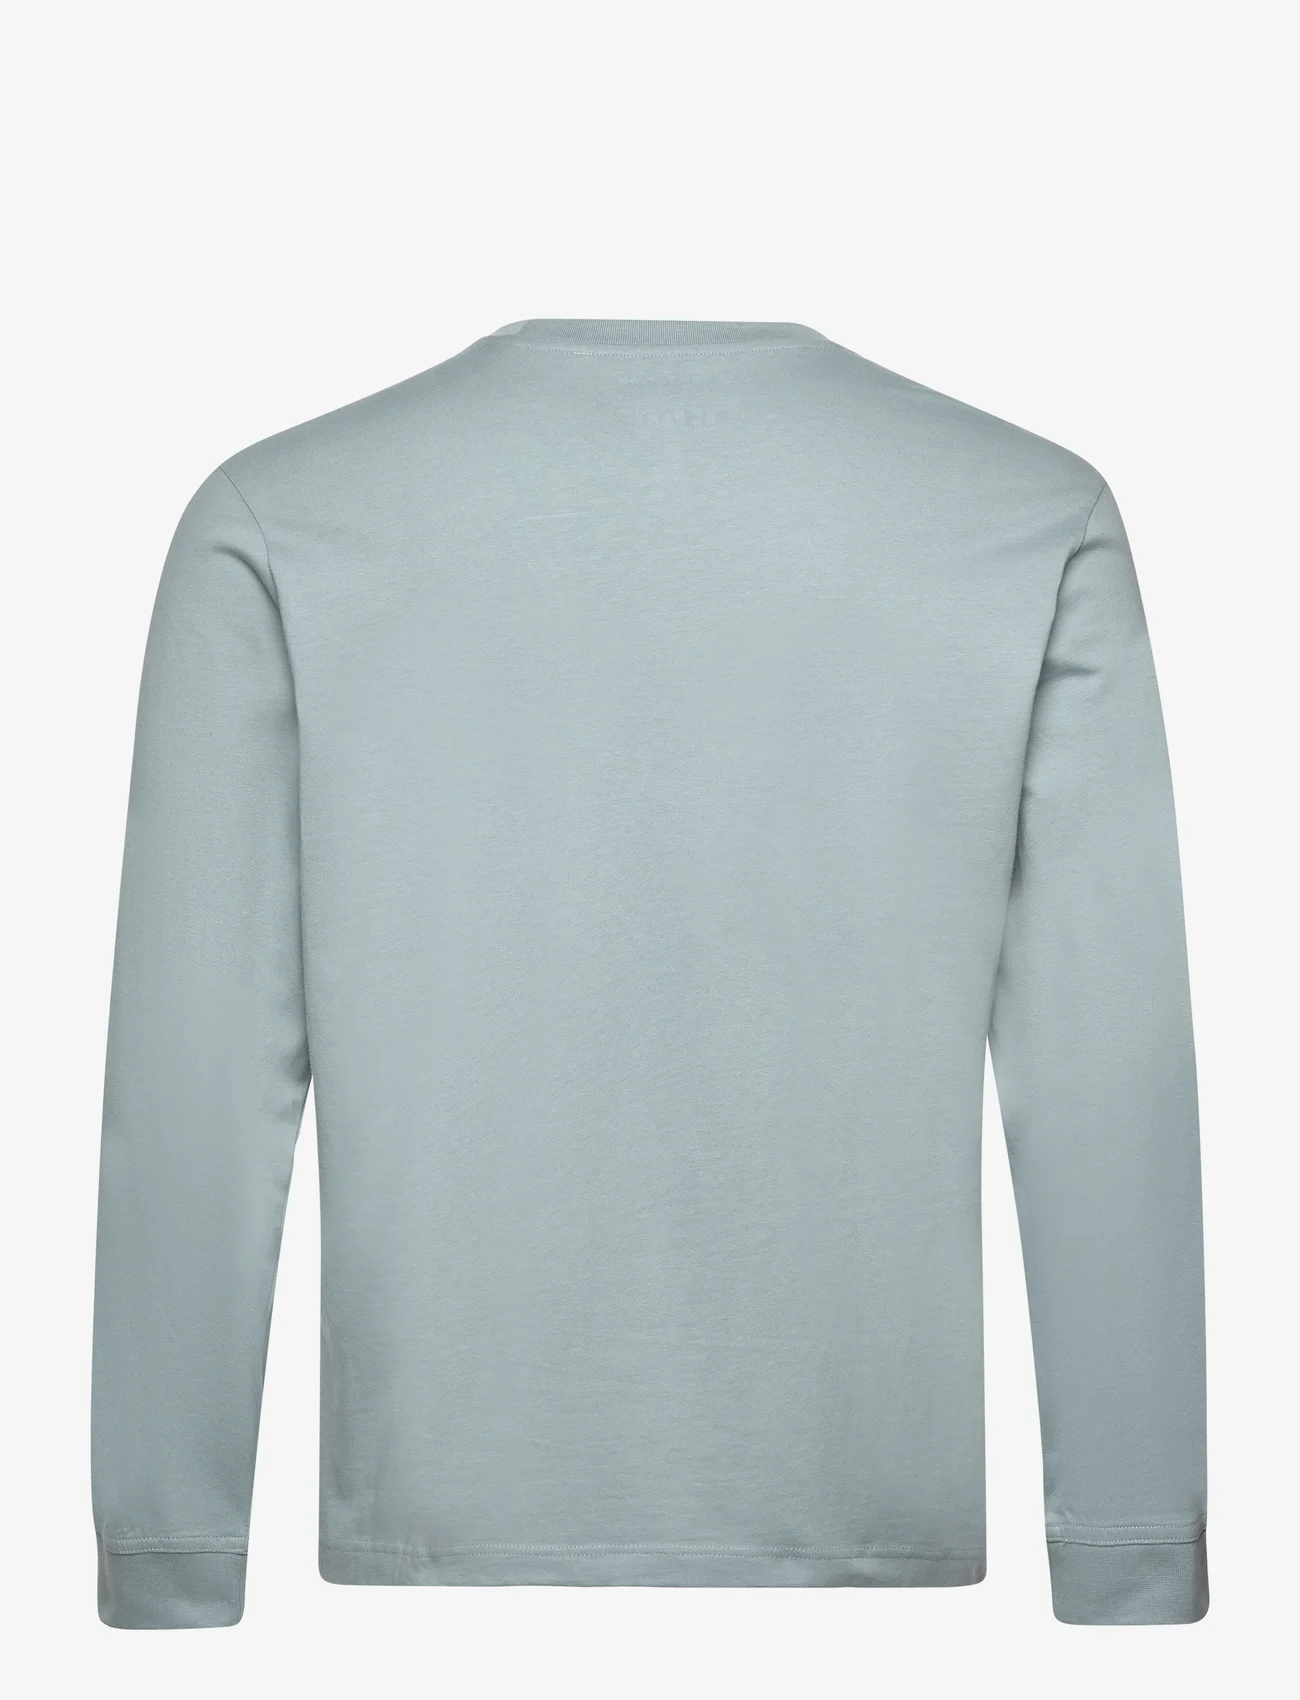 Tom Tailor - basic longsleeve t-shirt - laveste priser - grey mint - 1